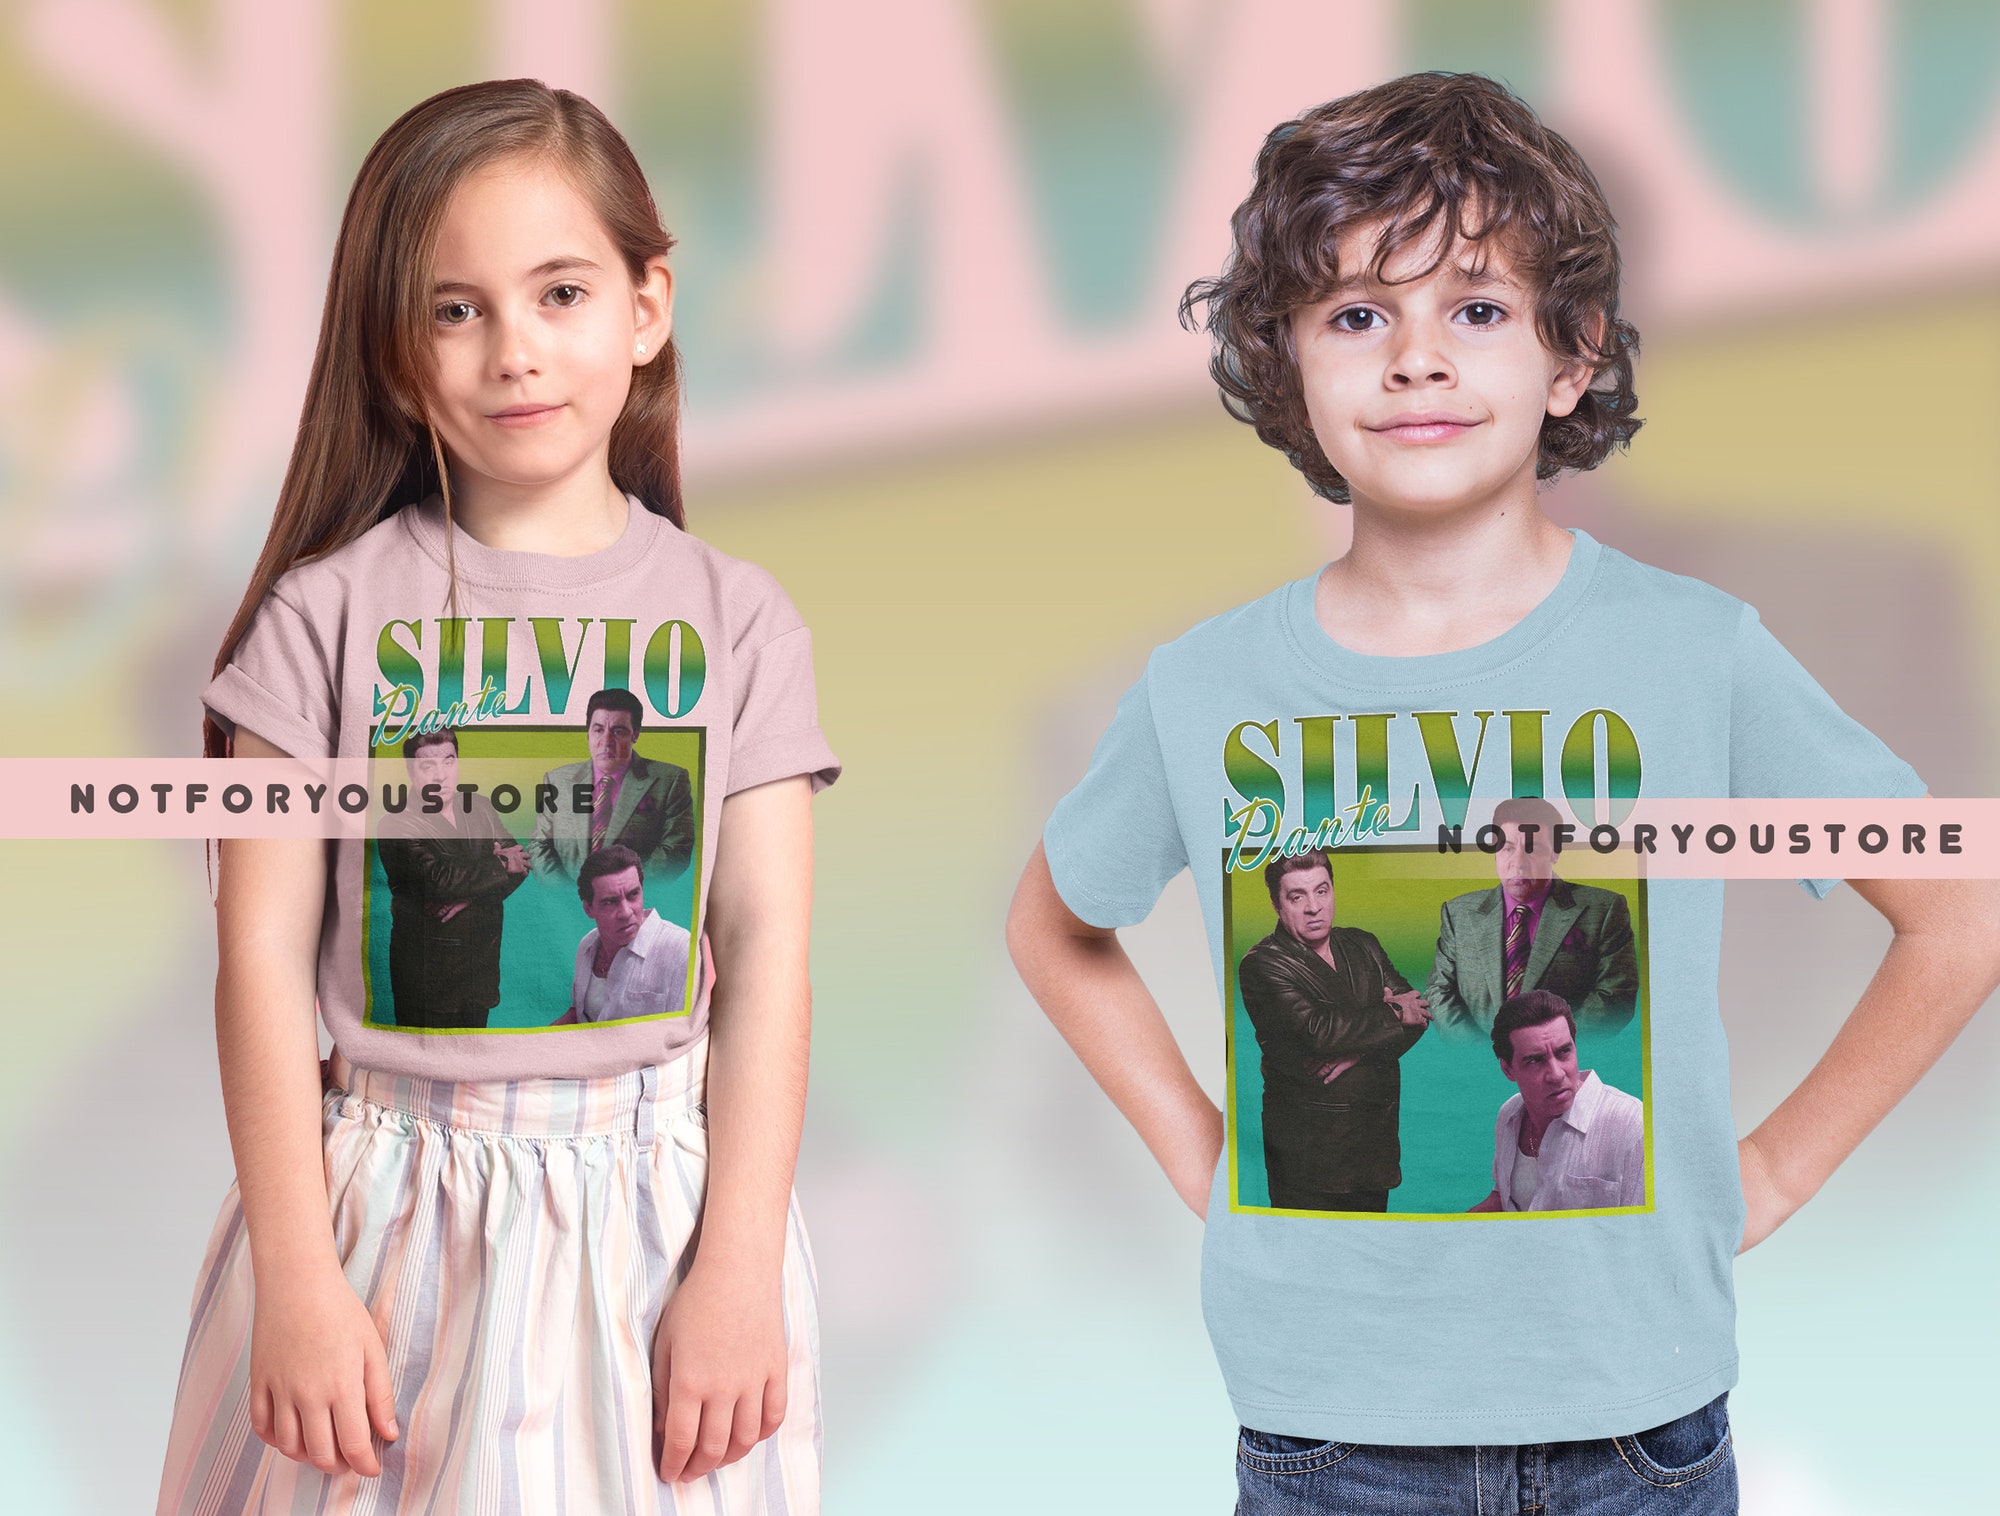 Discover SILVIO DANTE Shirt, Silvio The Sopranos Shirt, Silvo Dante Homage, Silvo Dante Fan Tees, Silvo Saints of Newark, steven van zandt #tpc